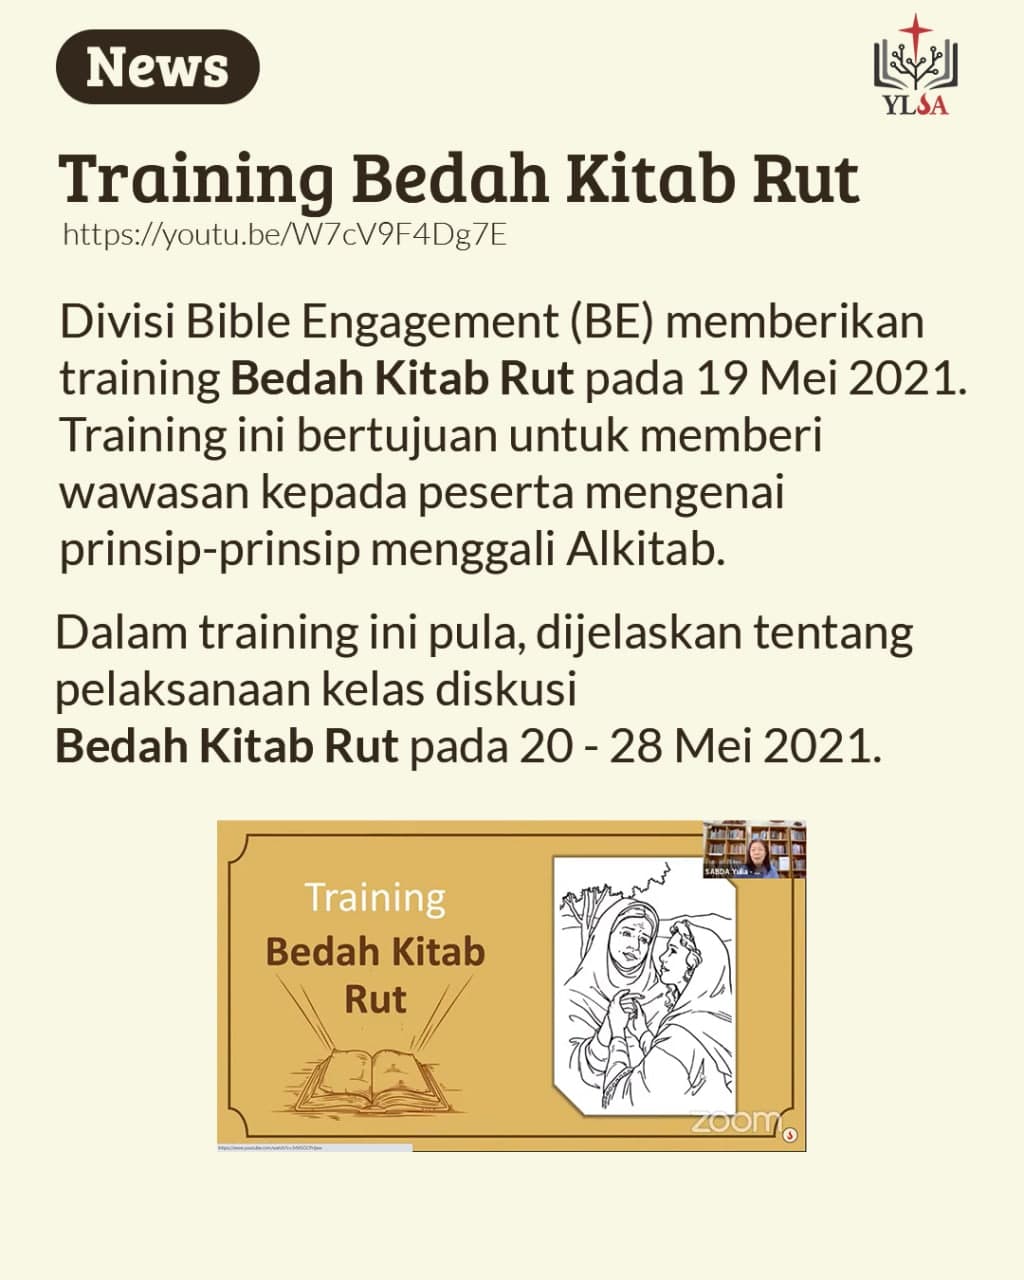 Training ini dilakukan pada 19 Mei 2021 untuk mendukung persiapan kelas diskusi Bedah Kitab Rut.